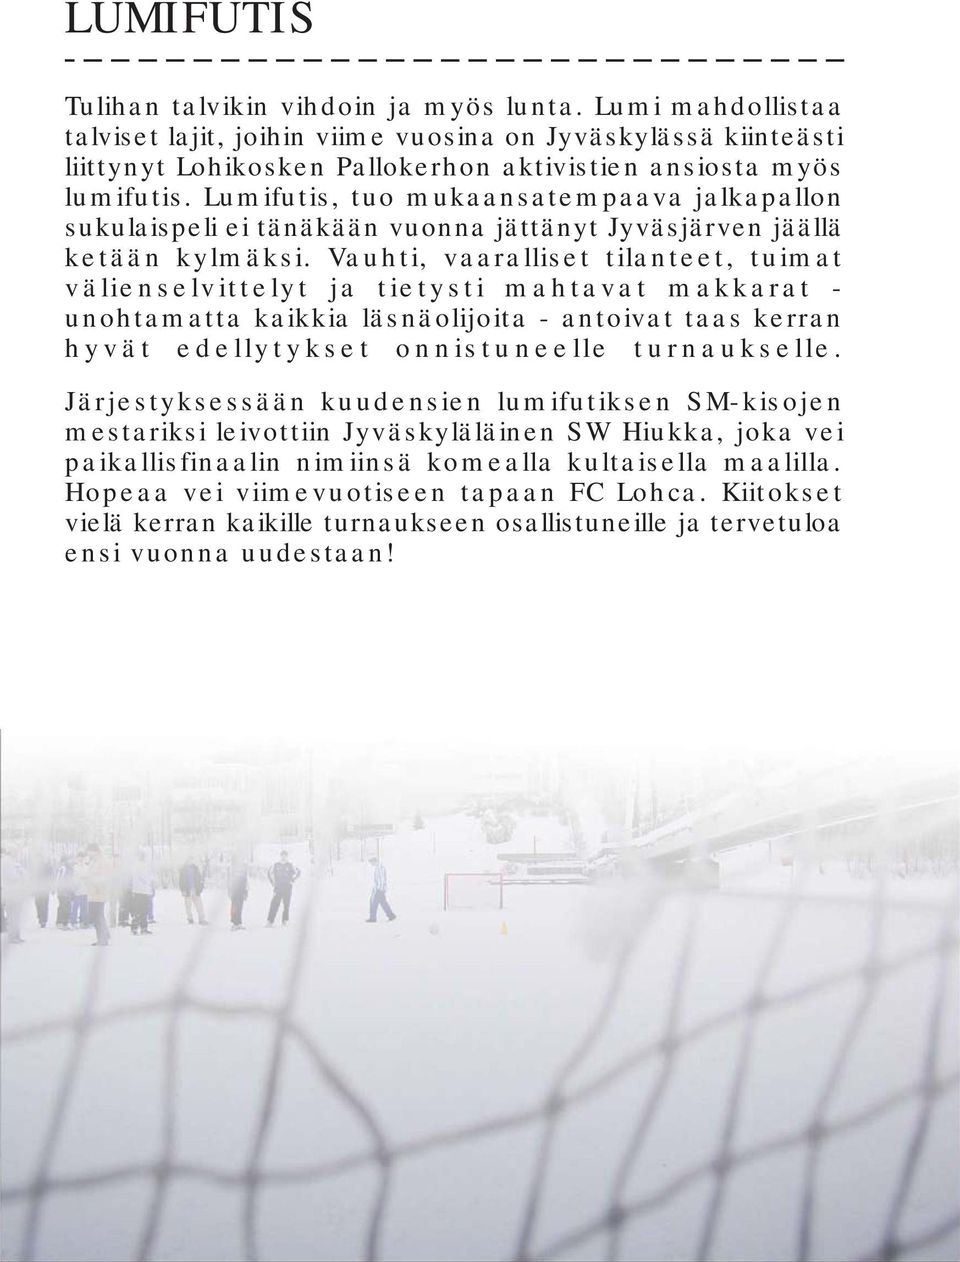 Lumifutis, tuo mukaansatempaava jalkapallon sukulaispeli ei tänäkään vuonna jättänyt Jyväsjärven jäällä ketään kylmäksi.